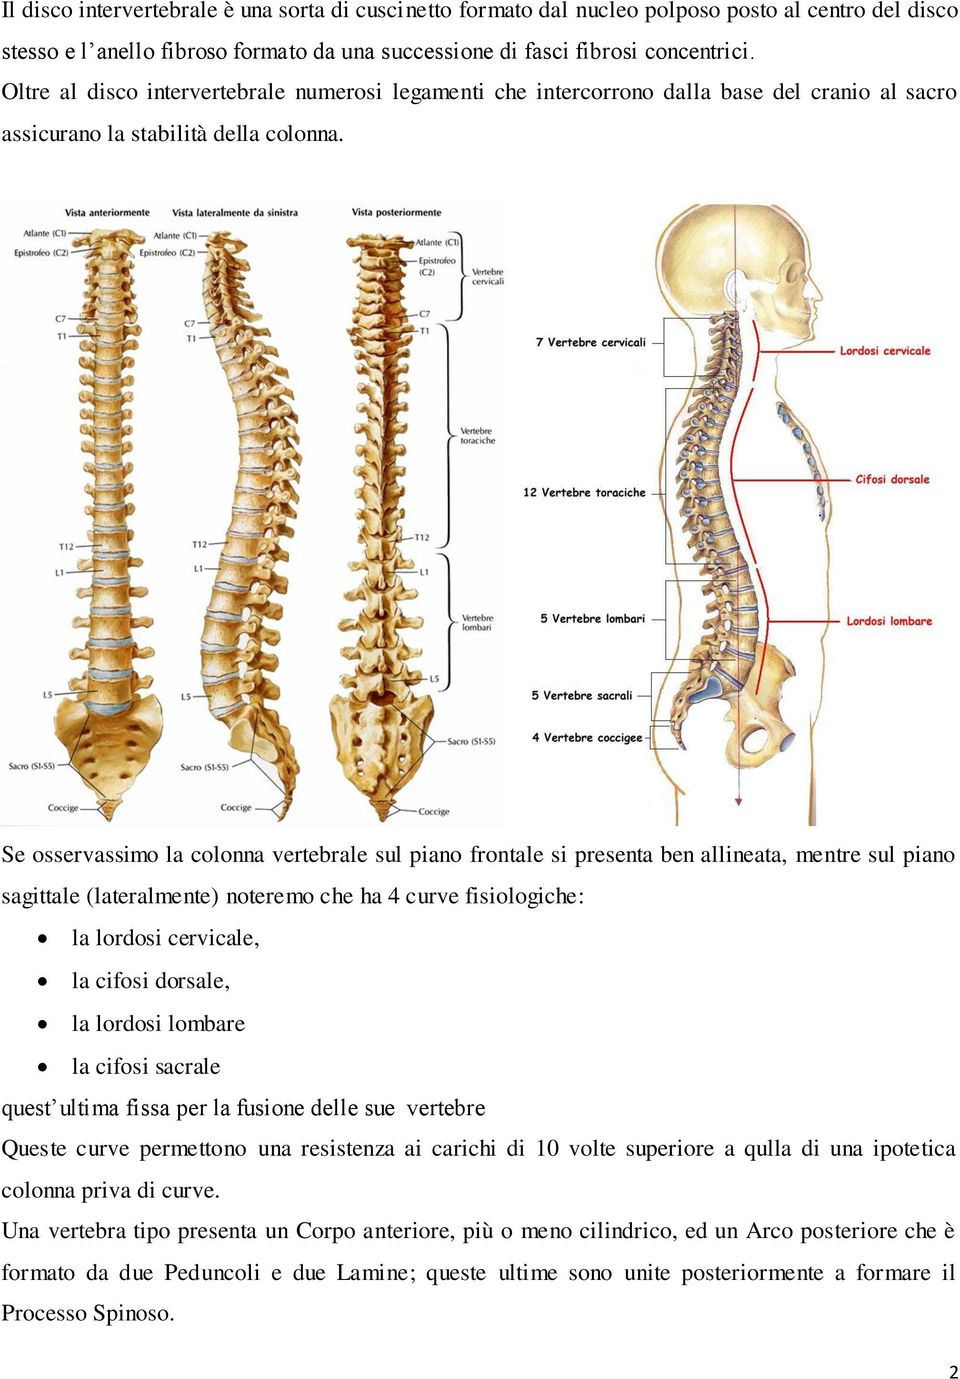 Se osservassimo la colonna vertebrale sul piano frontale si presenta ben allineata, mentre sul piano sagittale (lateralmente) noteremo che ha 4 curve fisiologiche: la lordosi cervicale, la cifosi